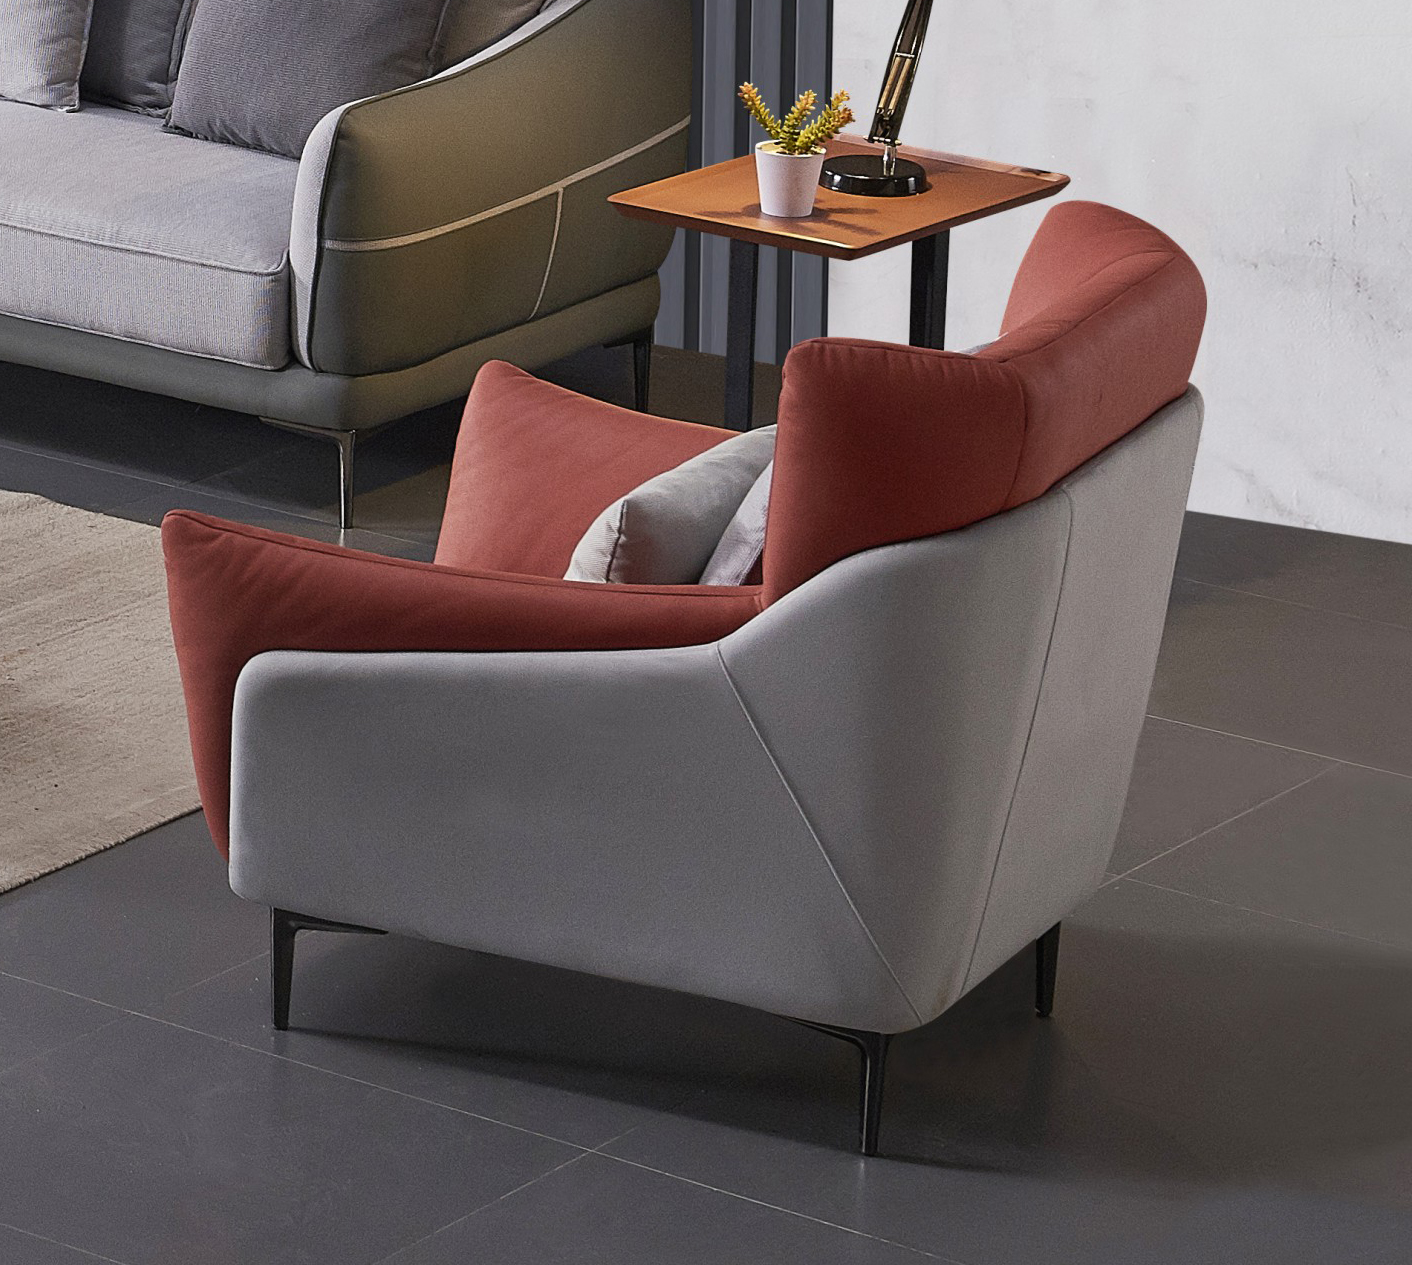 2021 дешевый диван-кровать хорошее качество домашняя мебель квартира мебель